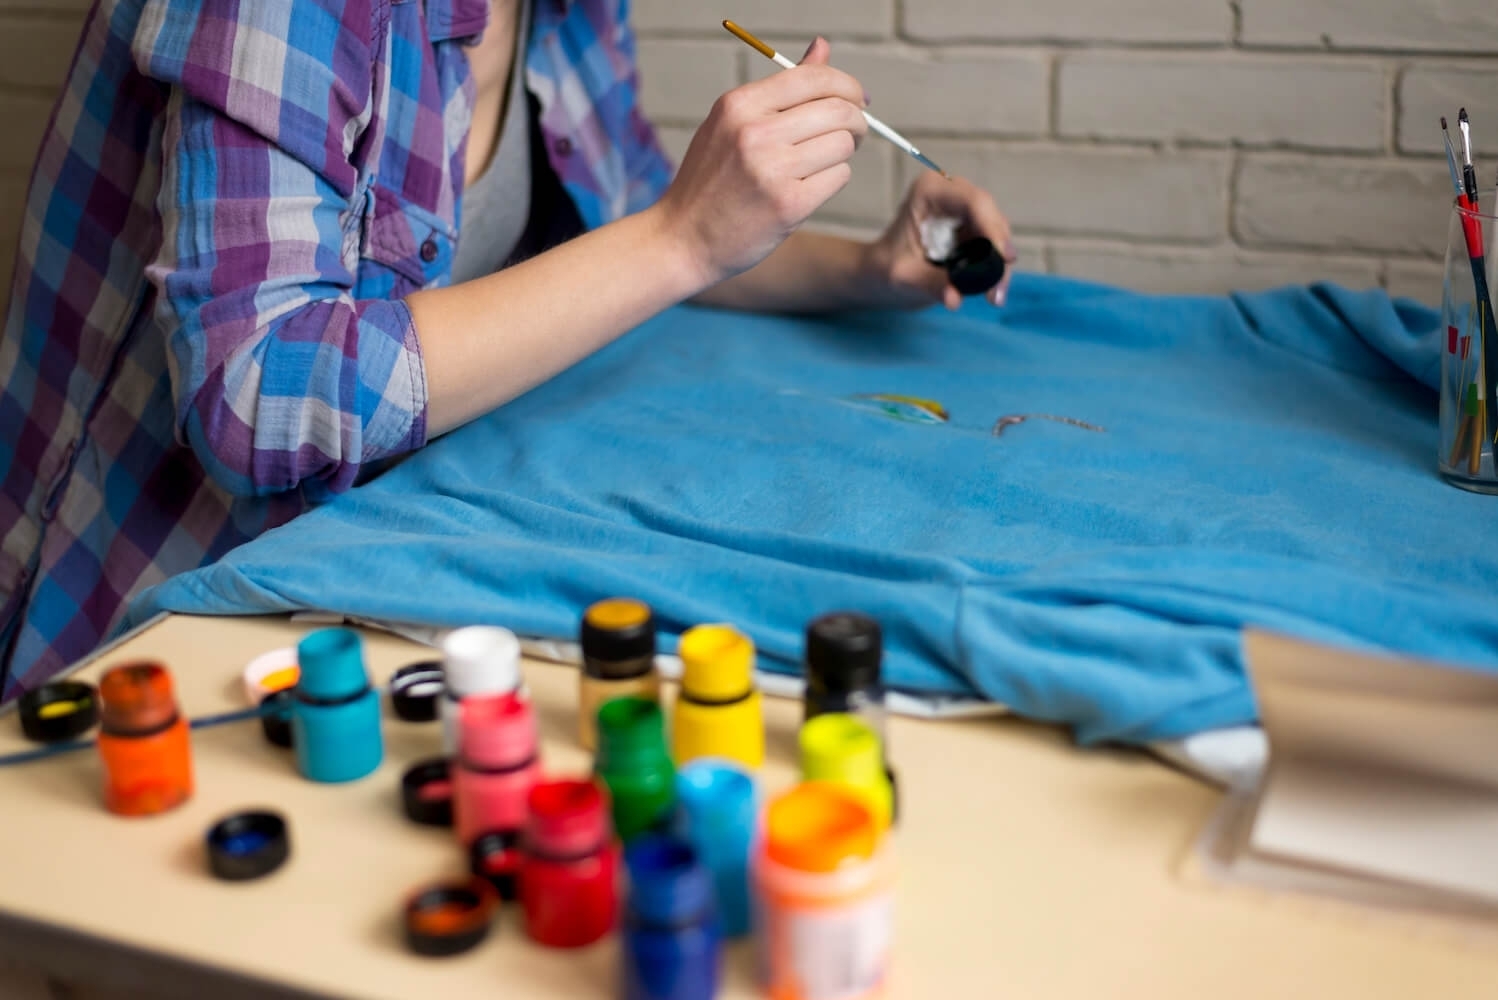 Краска для одежды или как обновить свой гардероб бюджетно